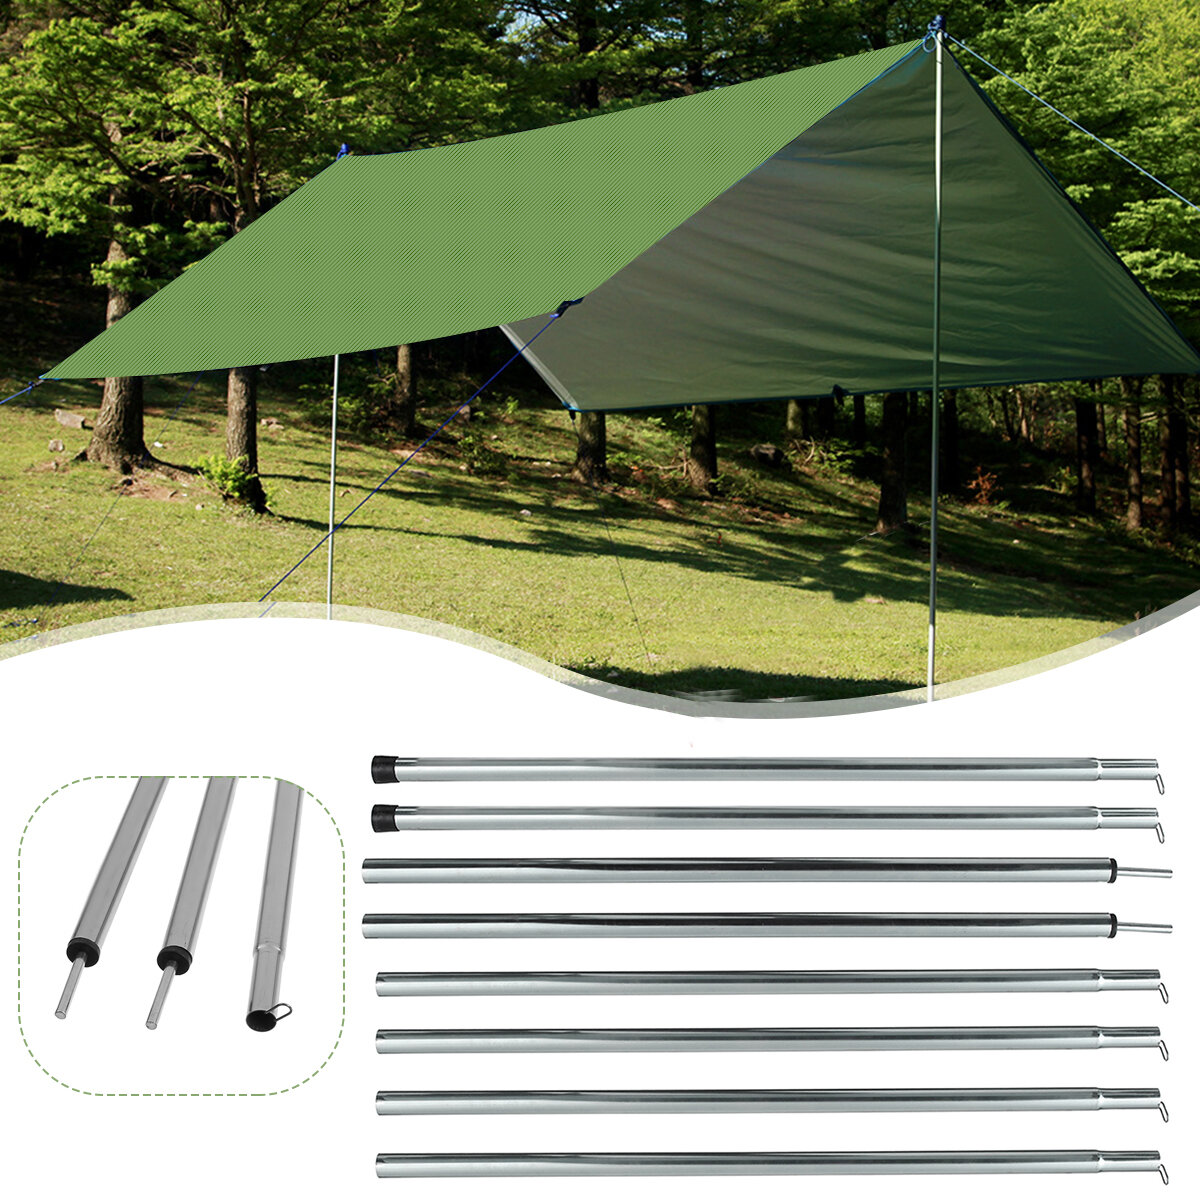 Asta di supporto in fibra di vetro da 200 cm per tende da campeggio, teloni, accessori per tende